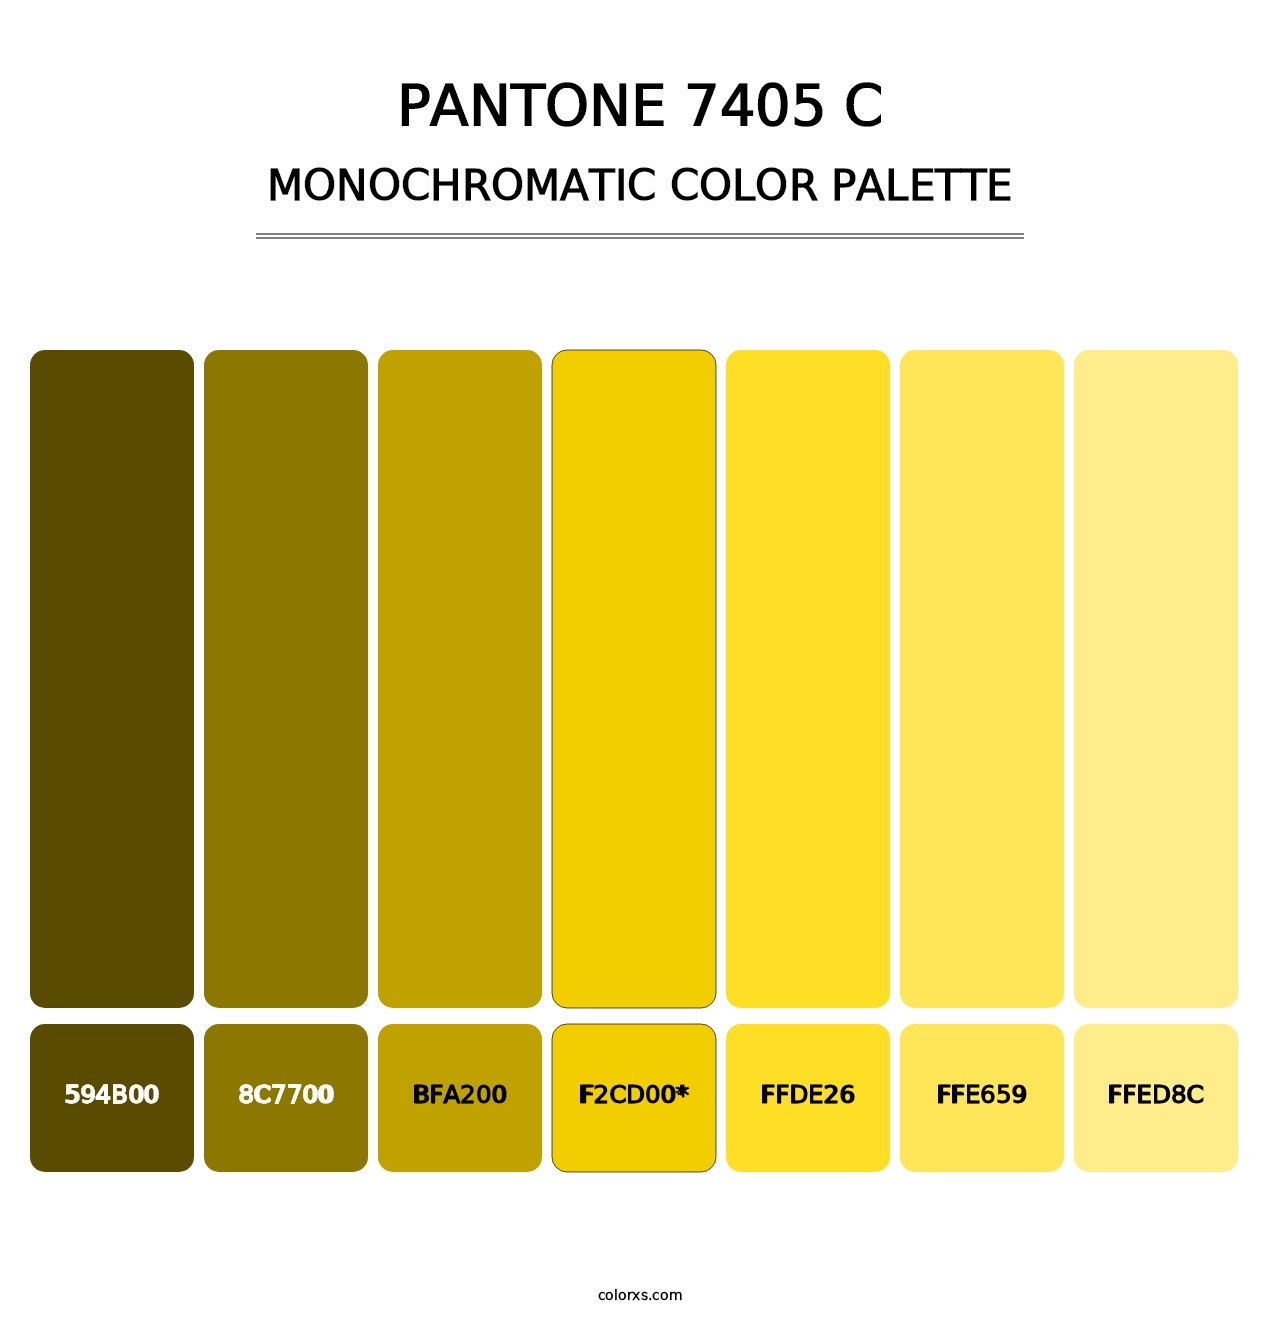 PANTONE 7405 C - Monochromatic Color Palette